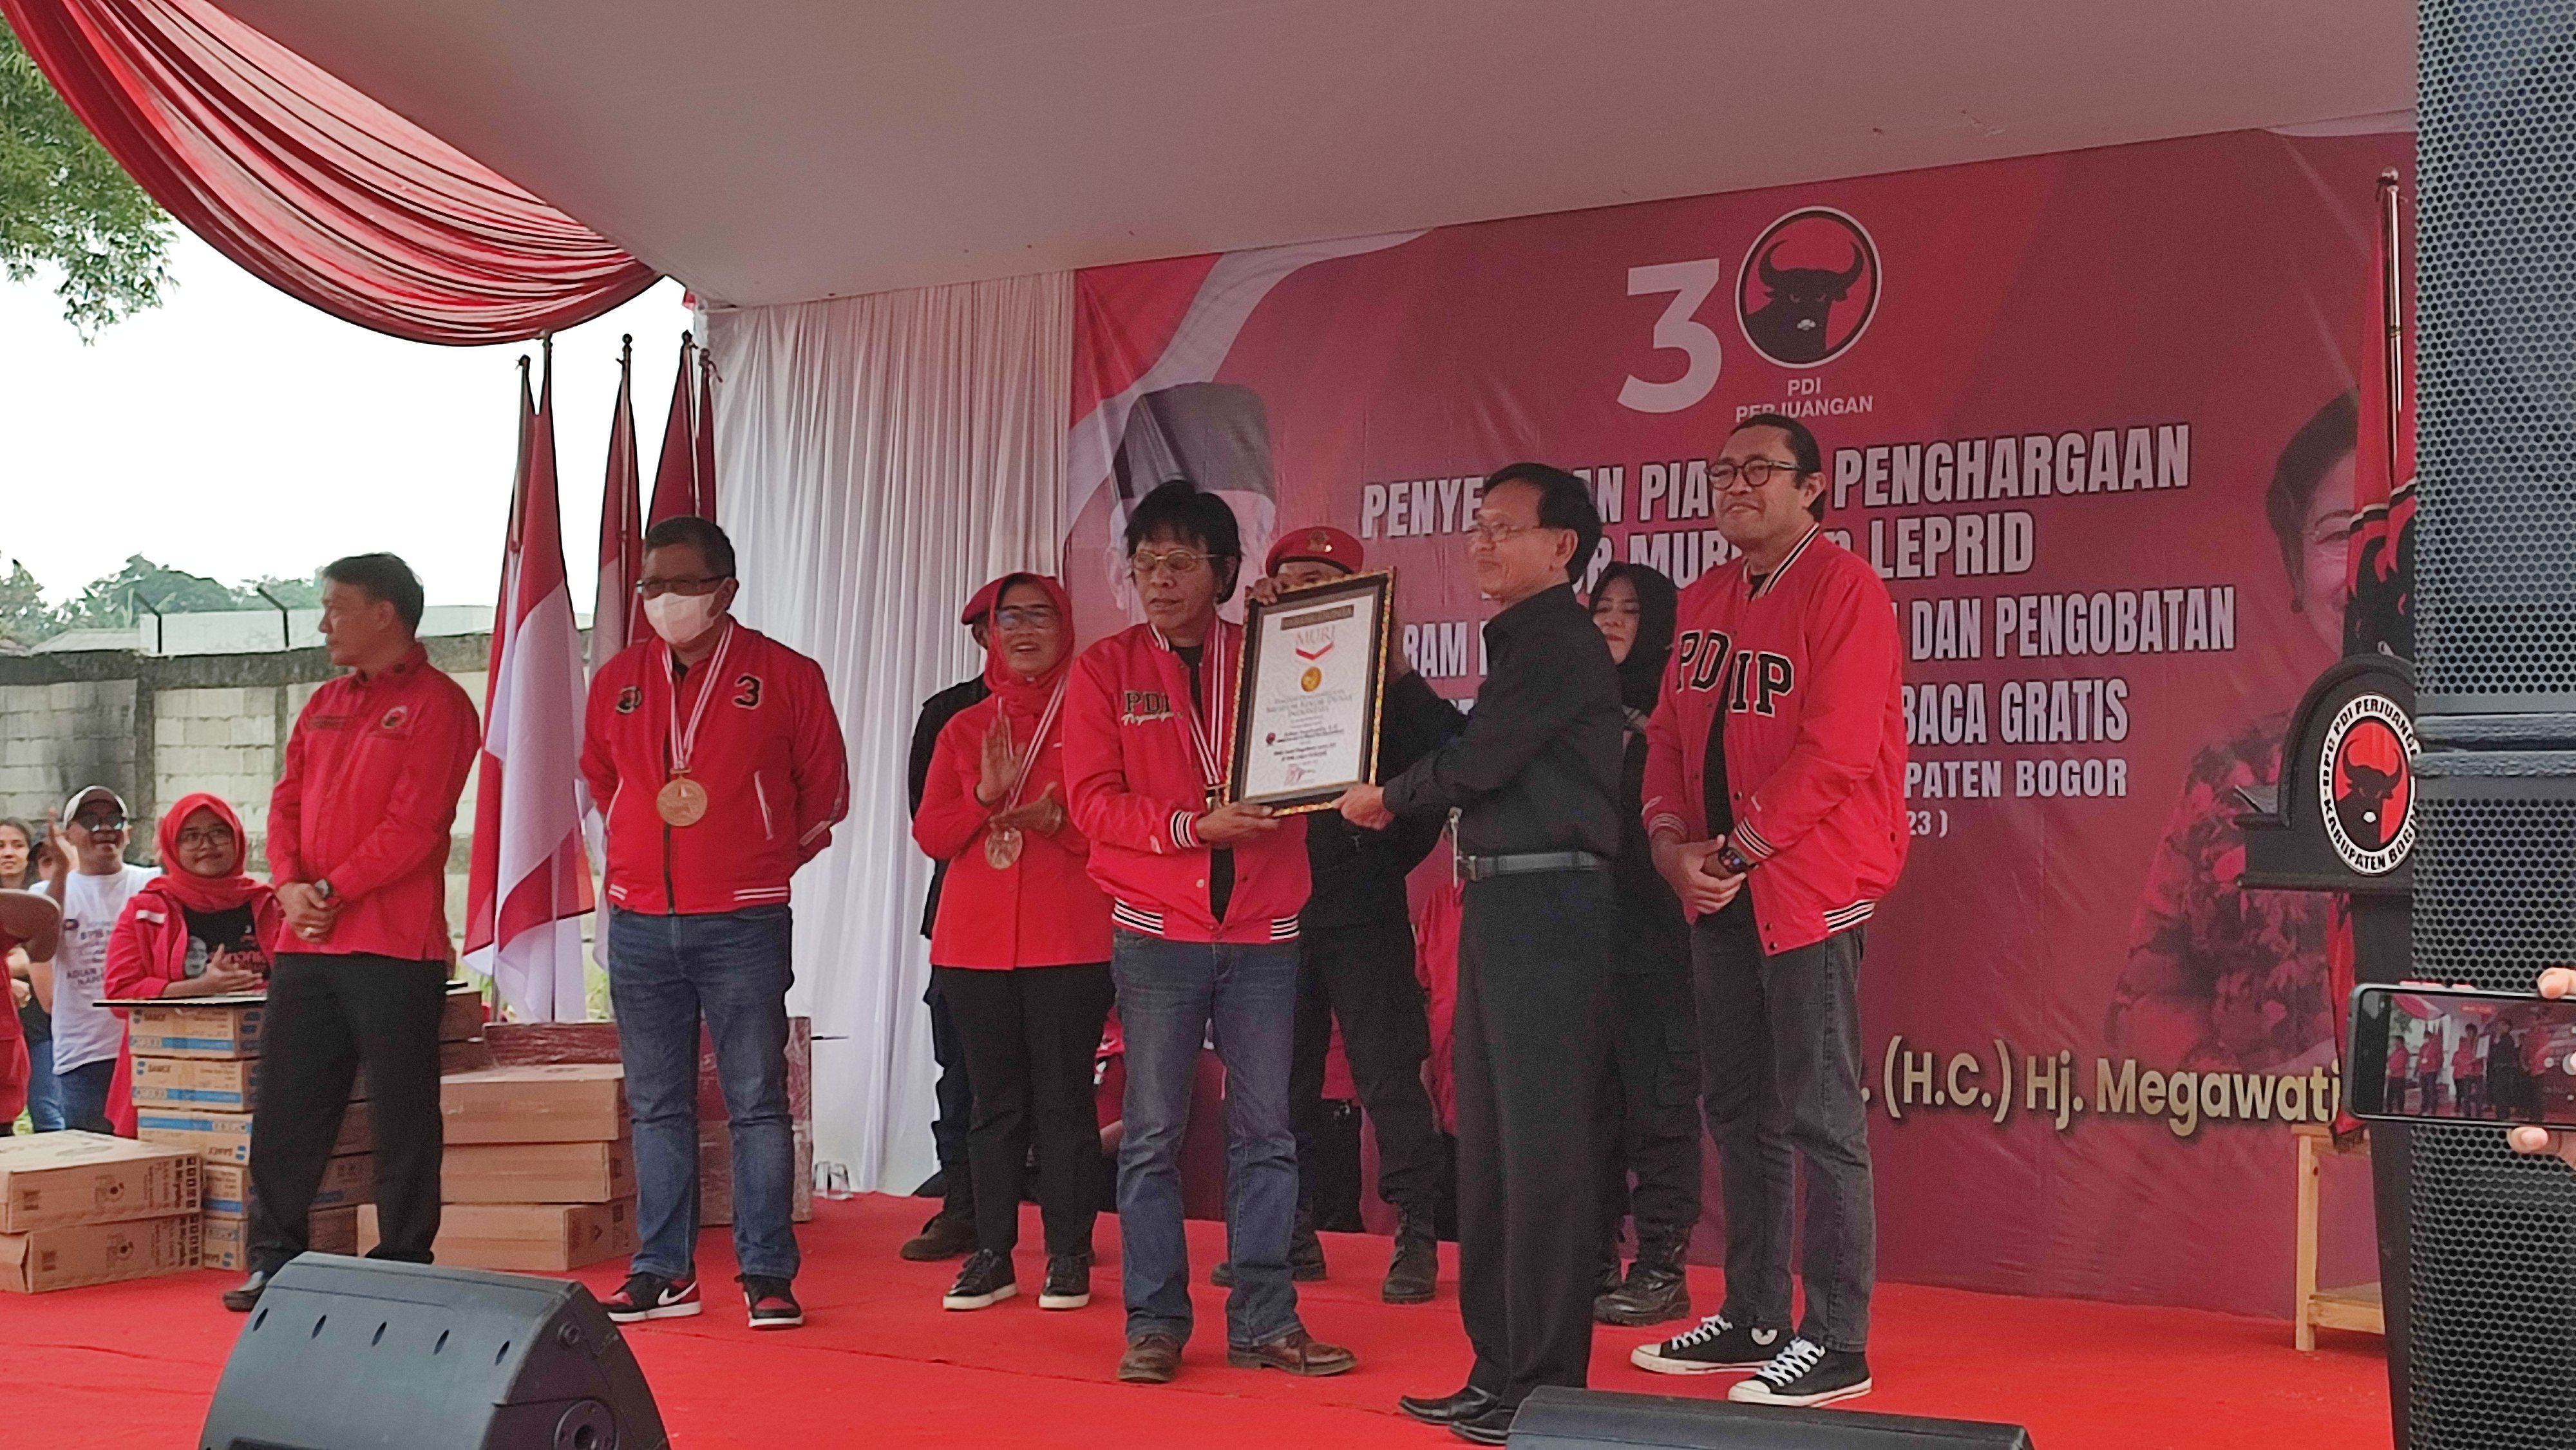 MURI Hadiahi PDI-P Rekor Pengobatan dan Pembagian Kacamata Se-Kabupaten Bogor